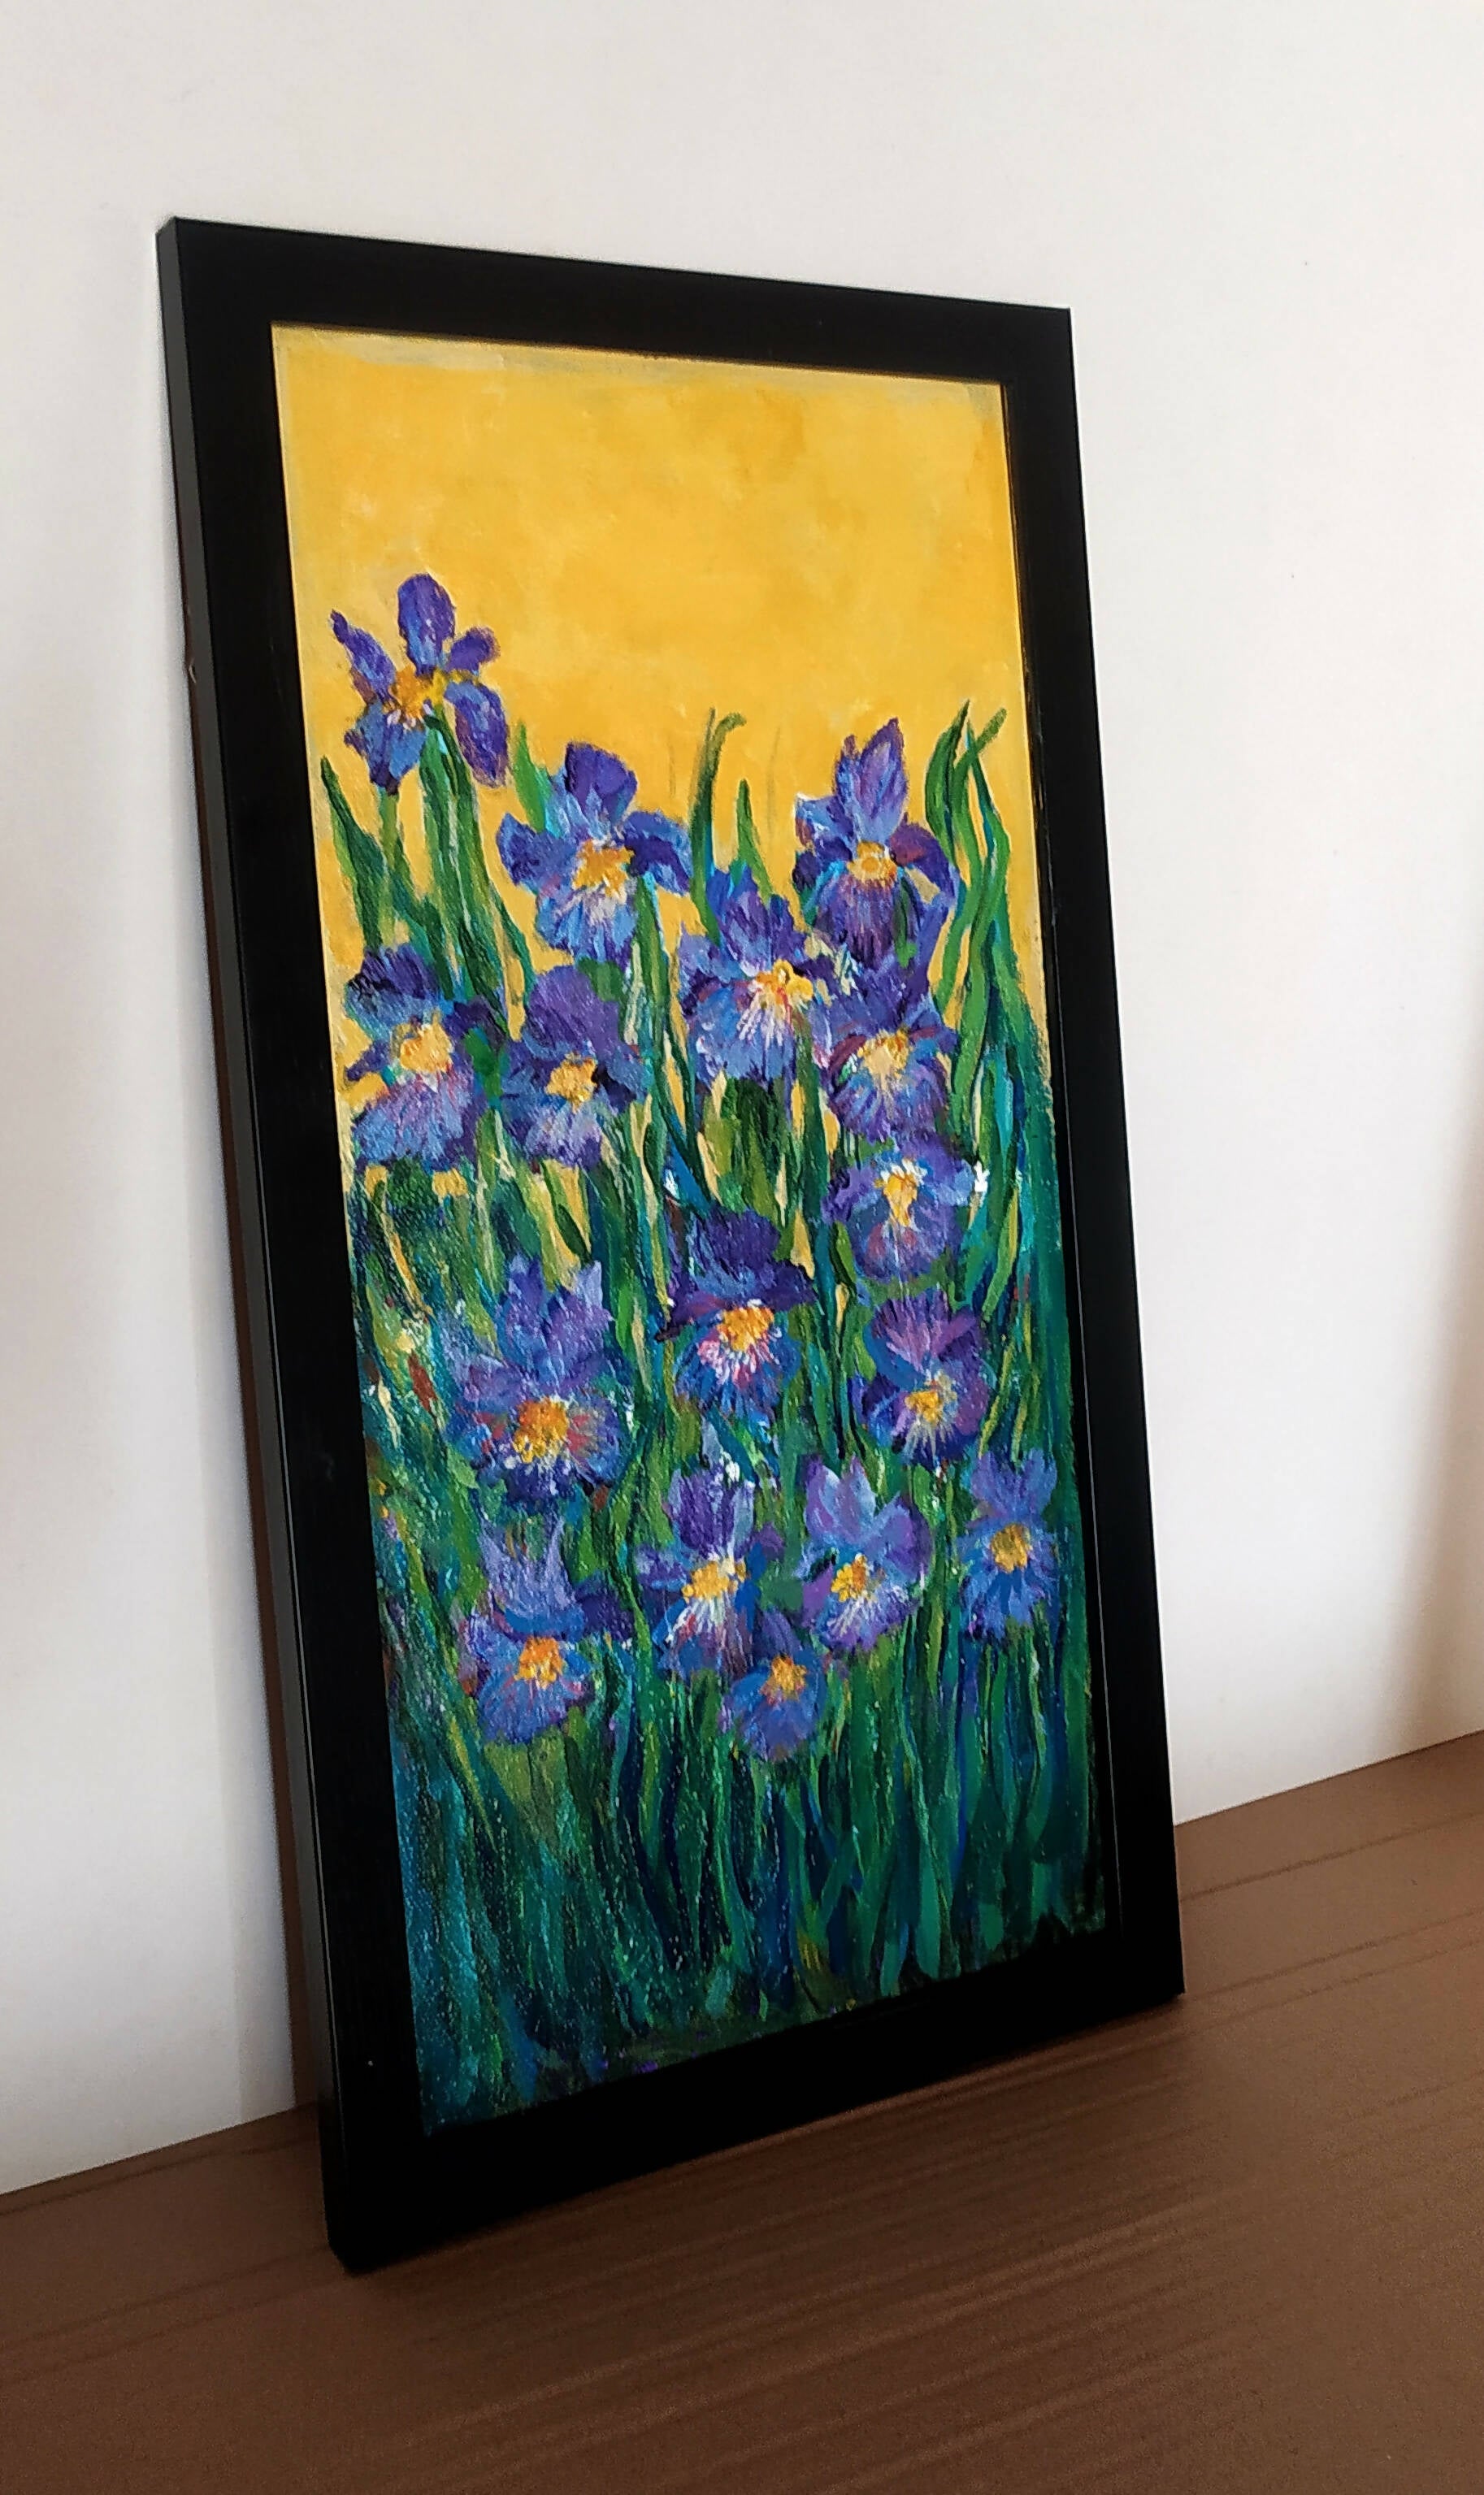 Iris garden Framed acrylic painting on canvas